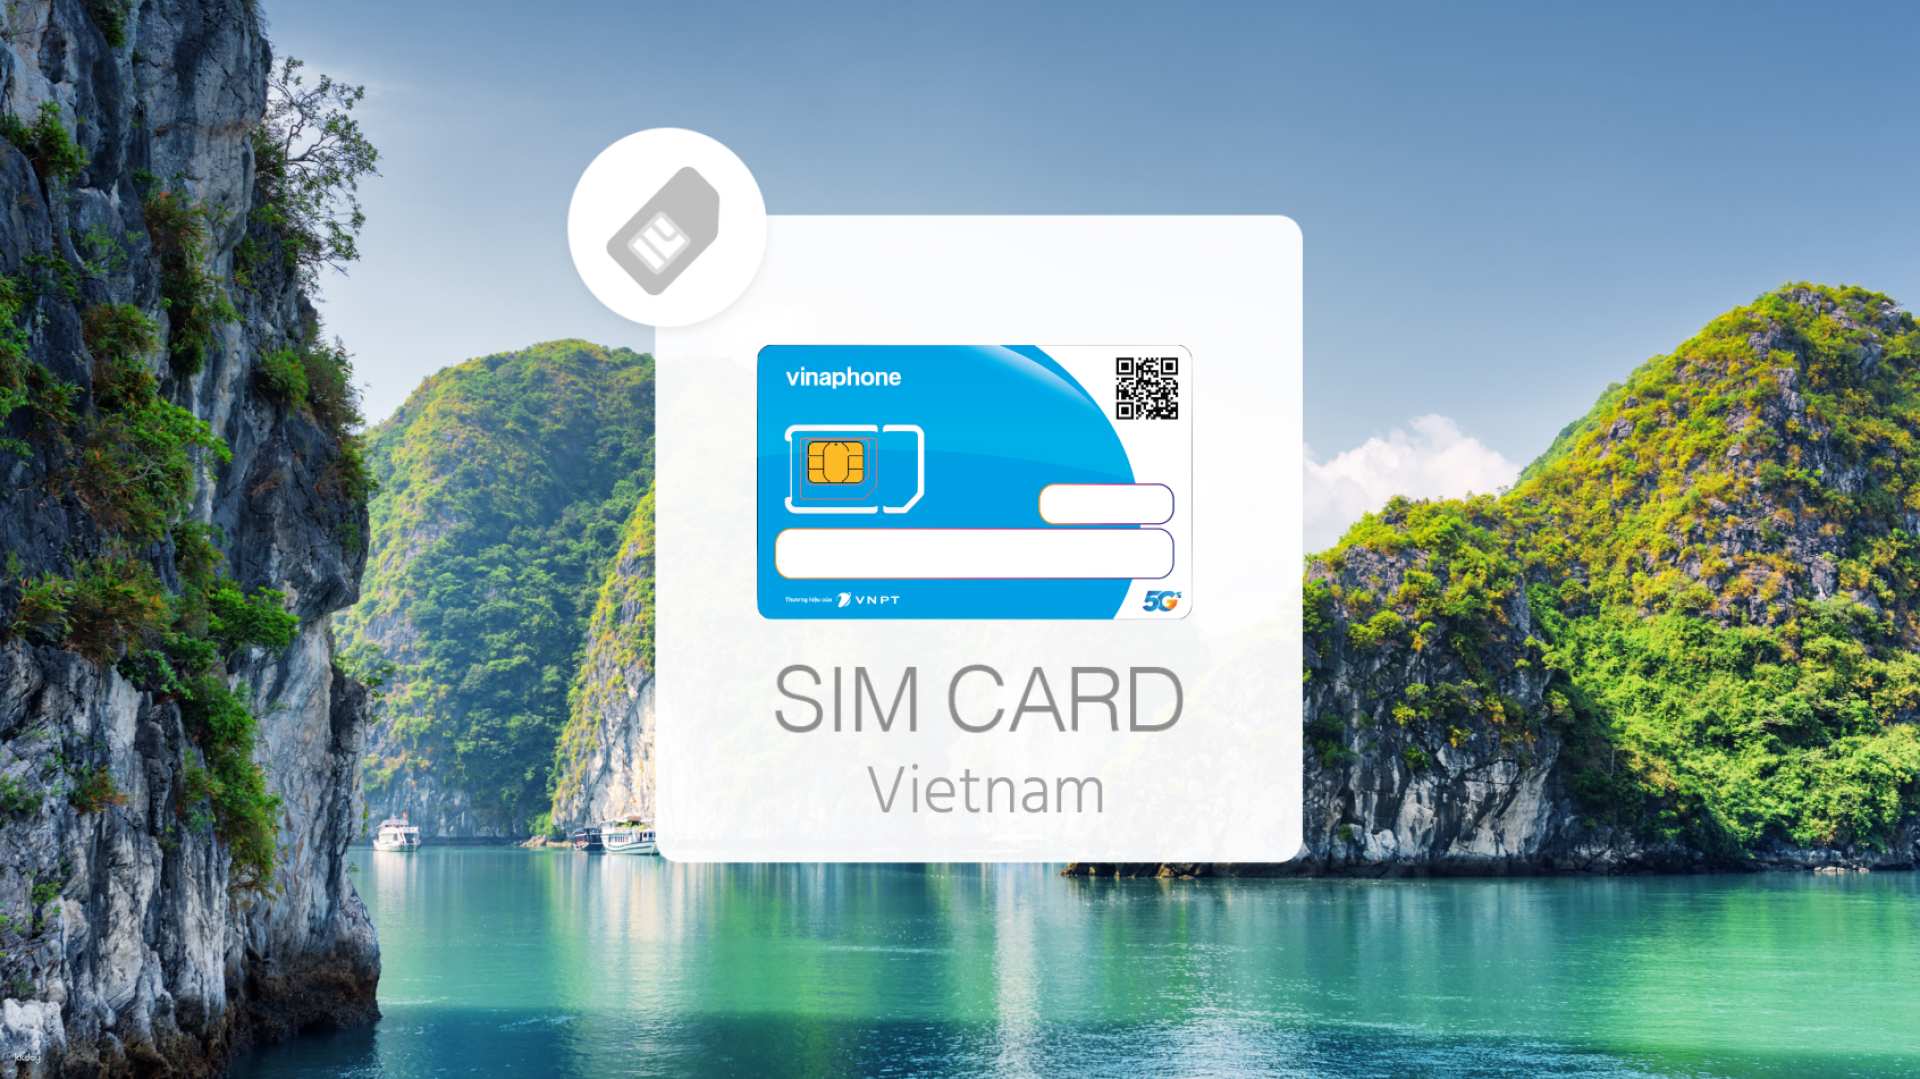 越南-4G SIM卡上網吃到飽&語音通話| 新山國際機場領取